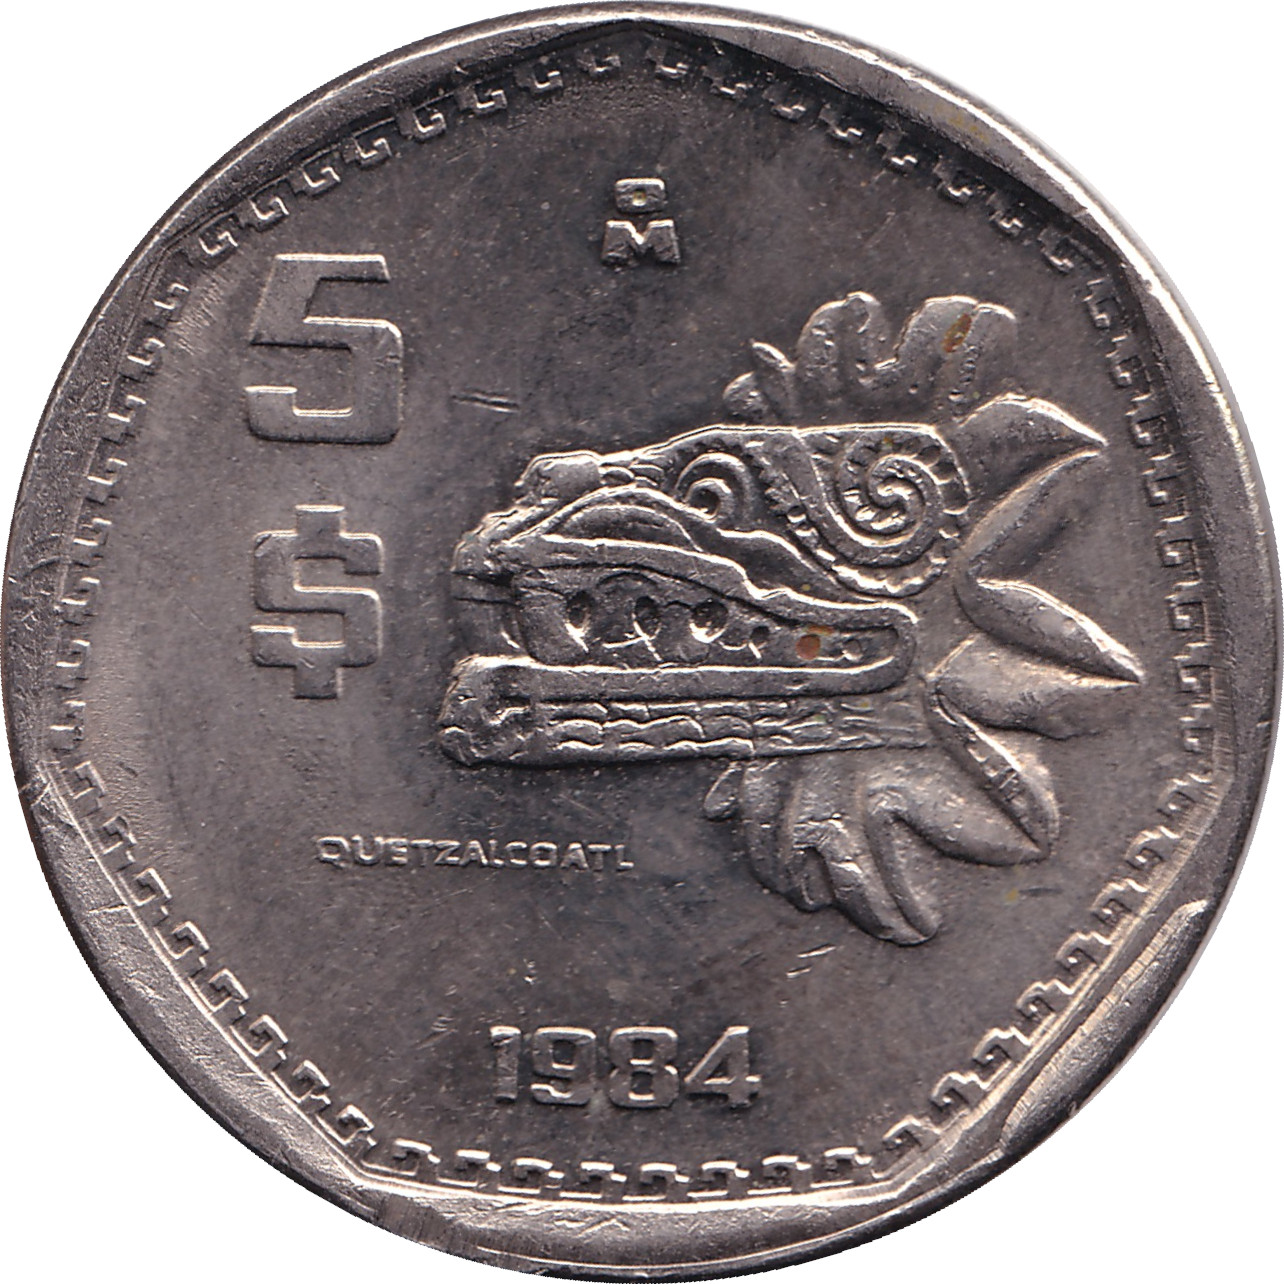 5 pesos - Culture Quetzalcoatl